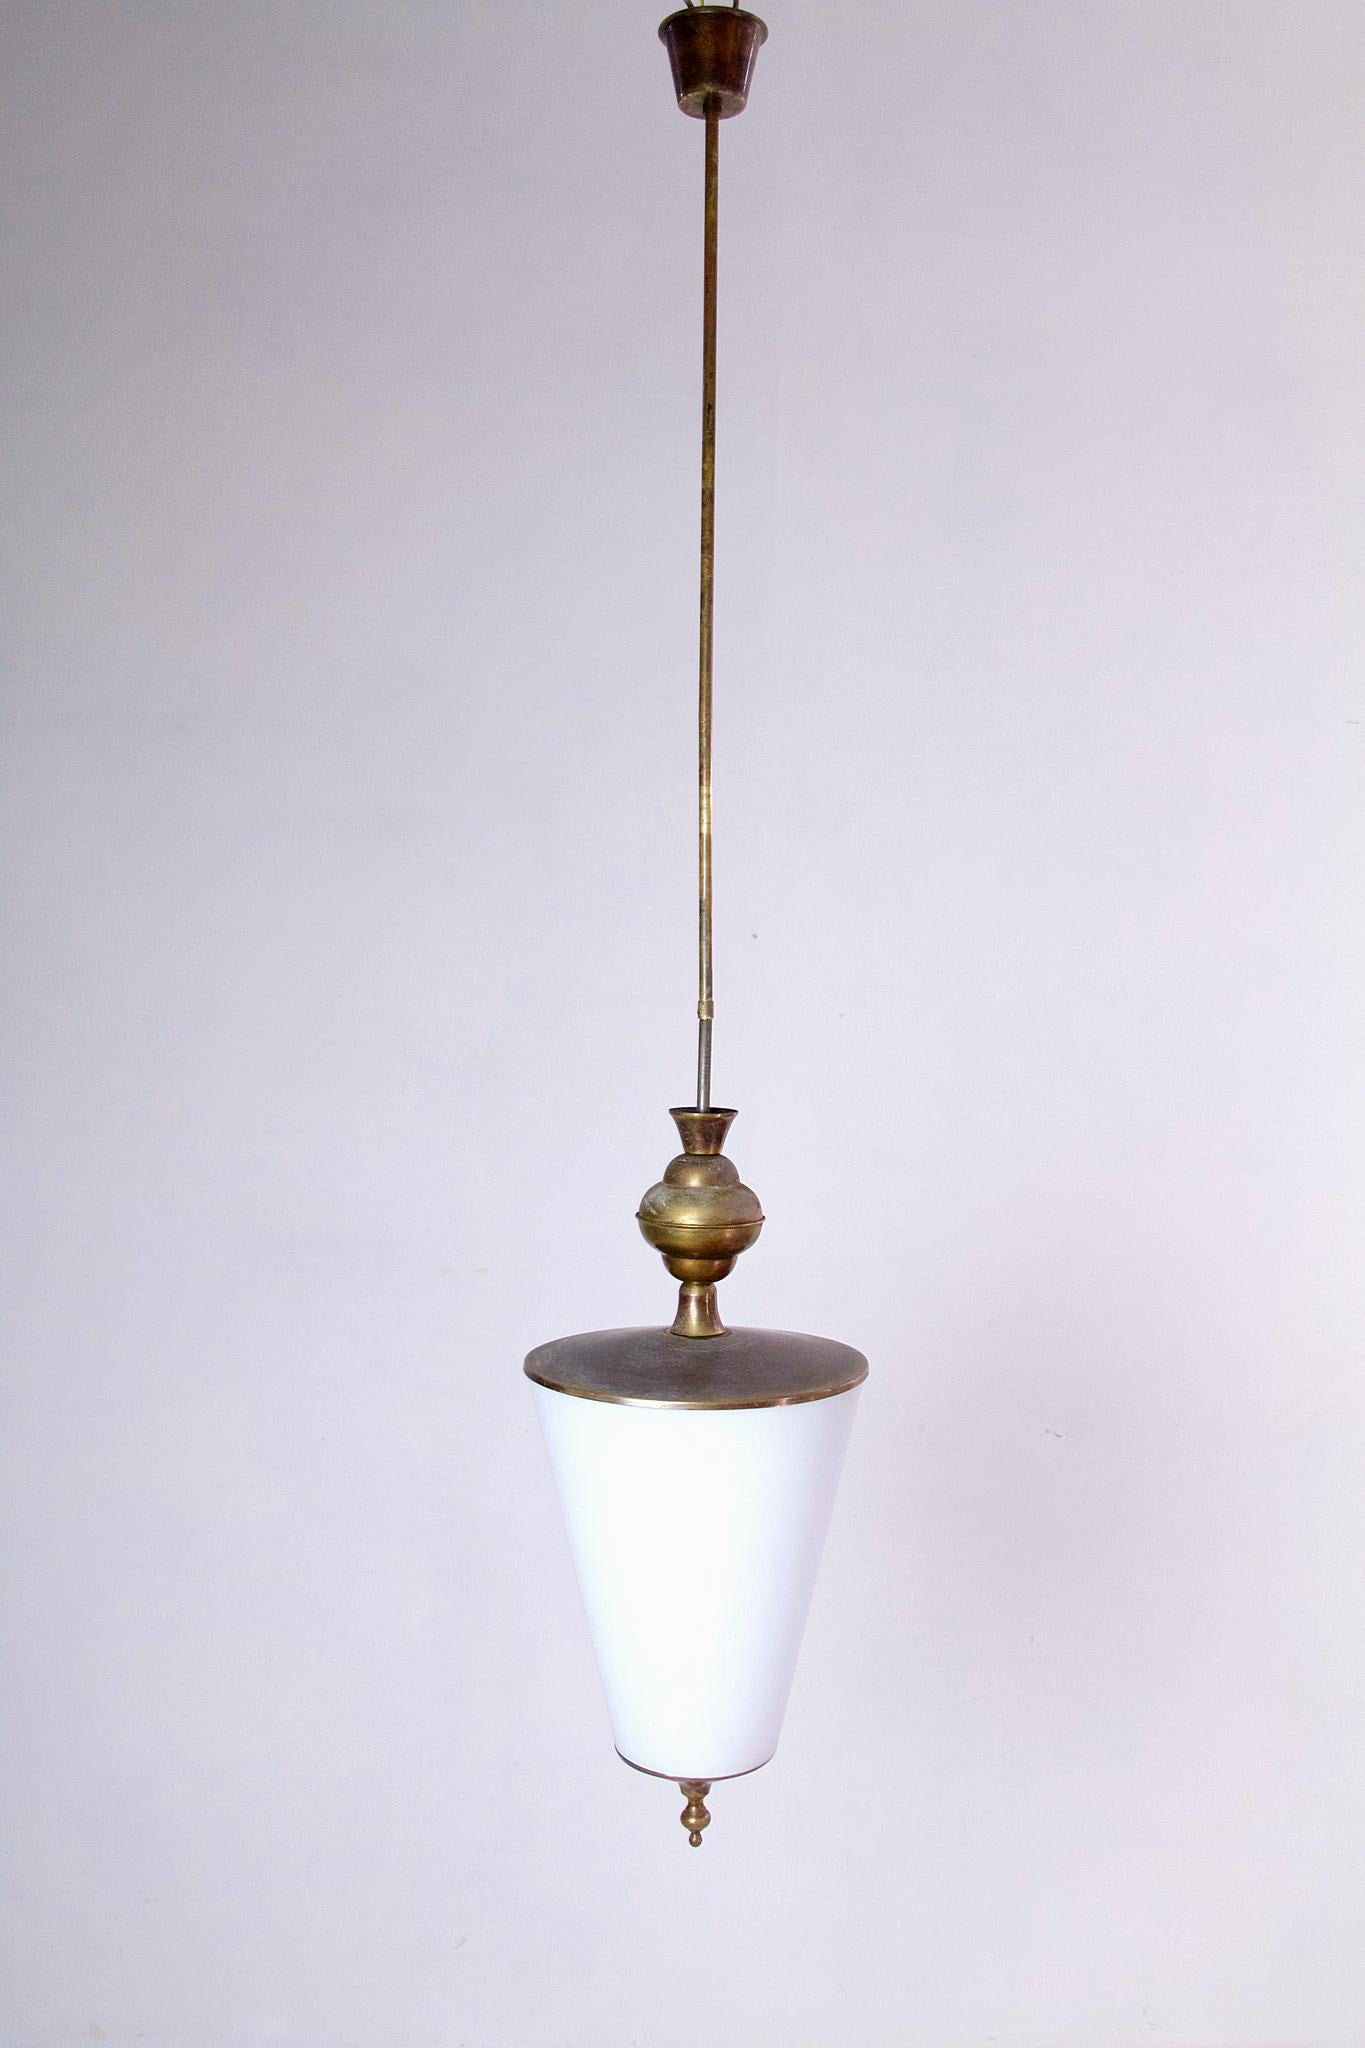 Une suspension élégante des années 1950 en laiton avec un abat-jour original en verre opalin. Le laiton est laqué sur les photos mais peut être poli sur demande bien sûr. La hauteur totale peut être réglée entre 130 cm et 60 cm.